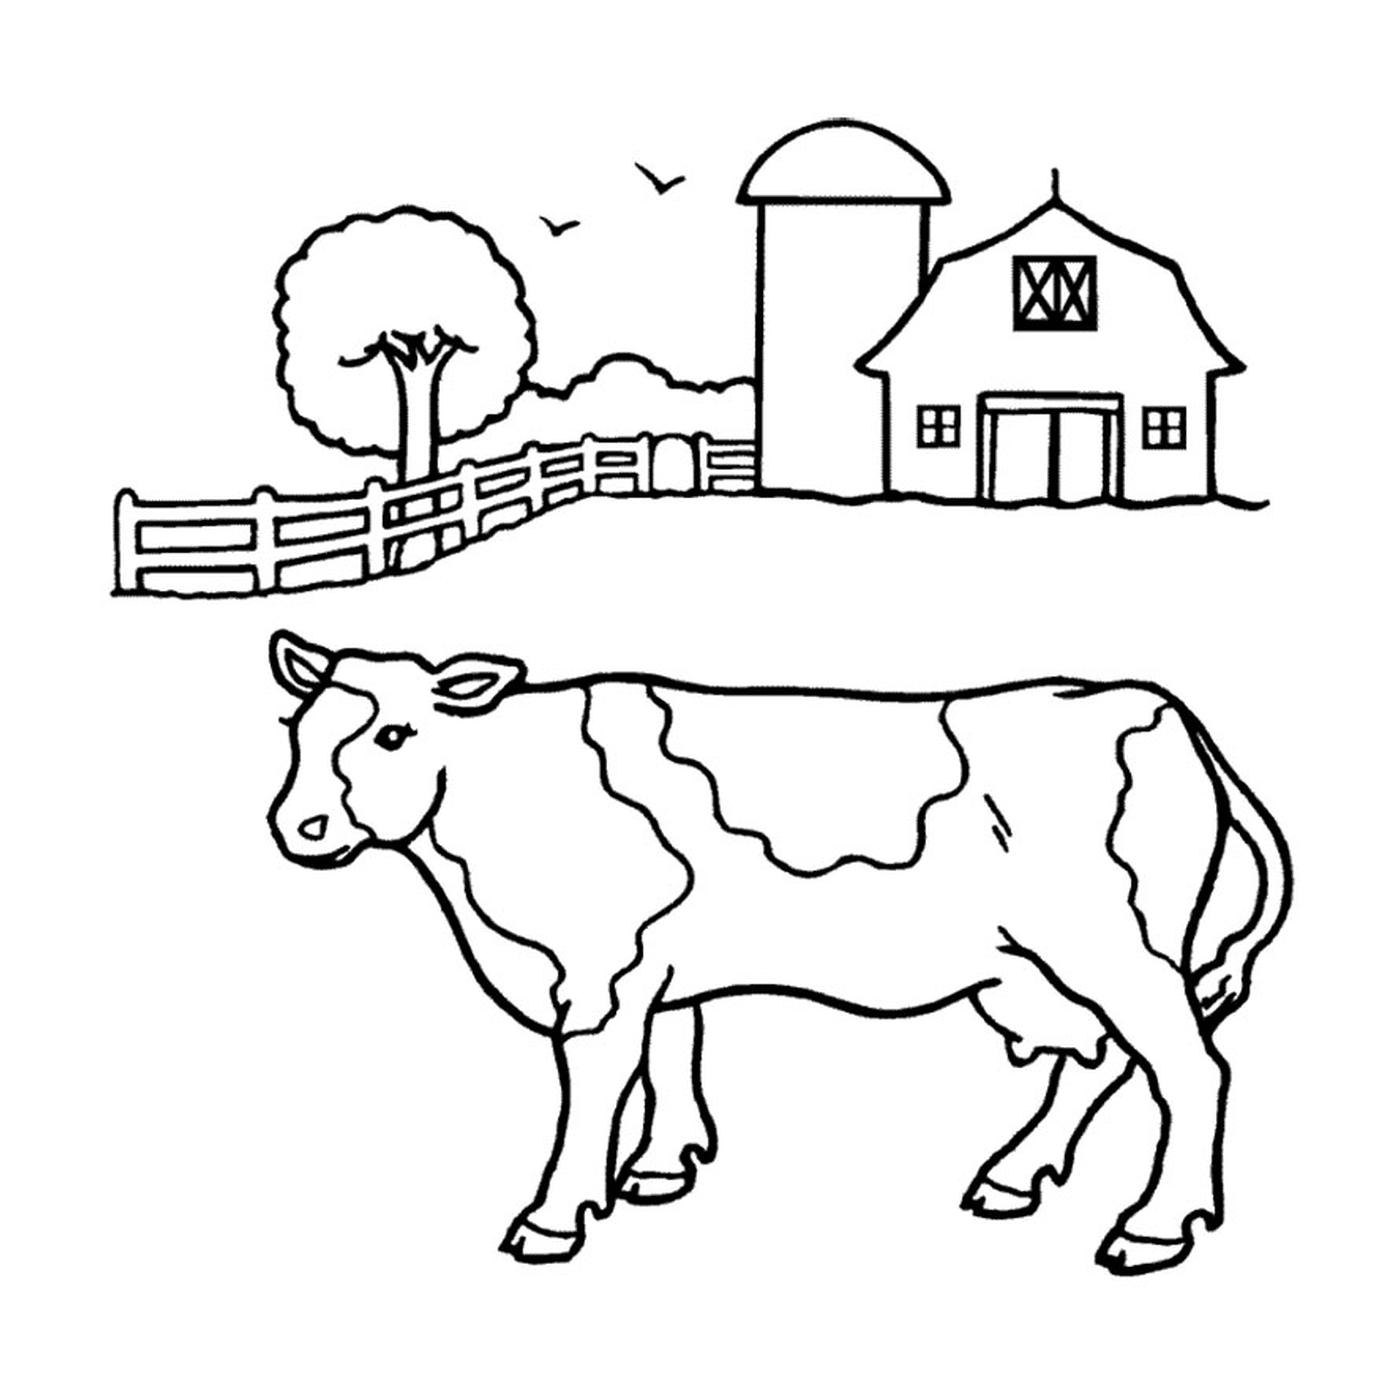  एक गाय खलिहान के सामने खड़ा है 